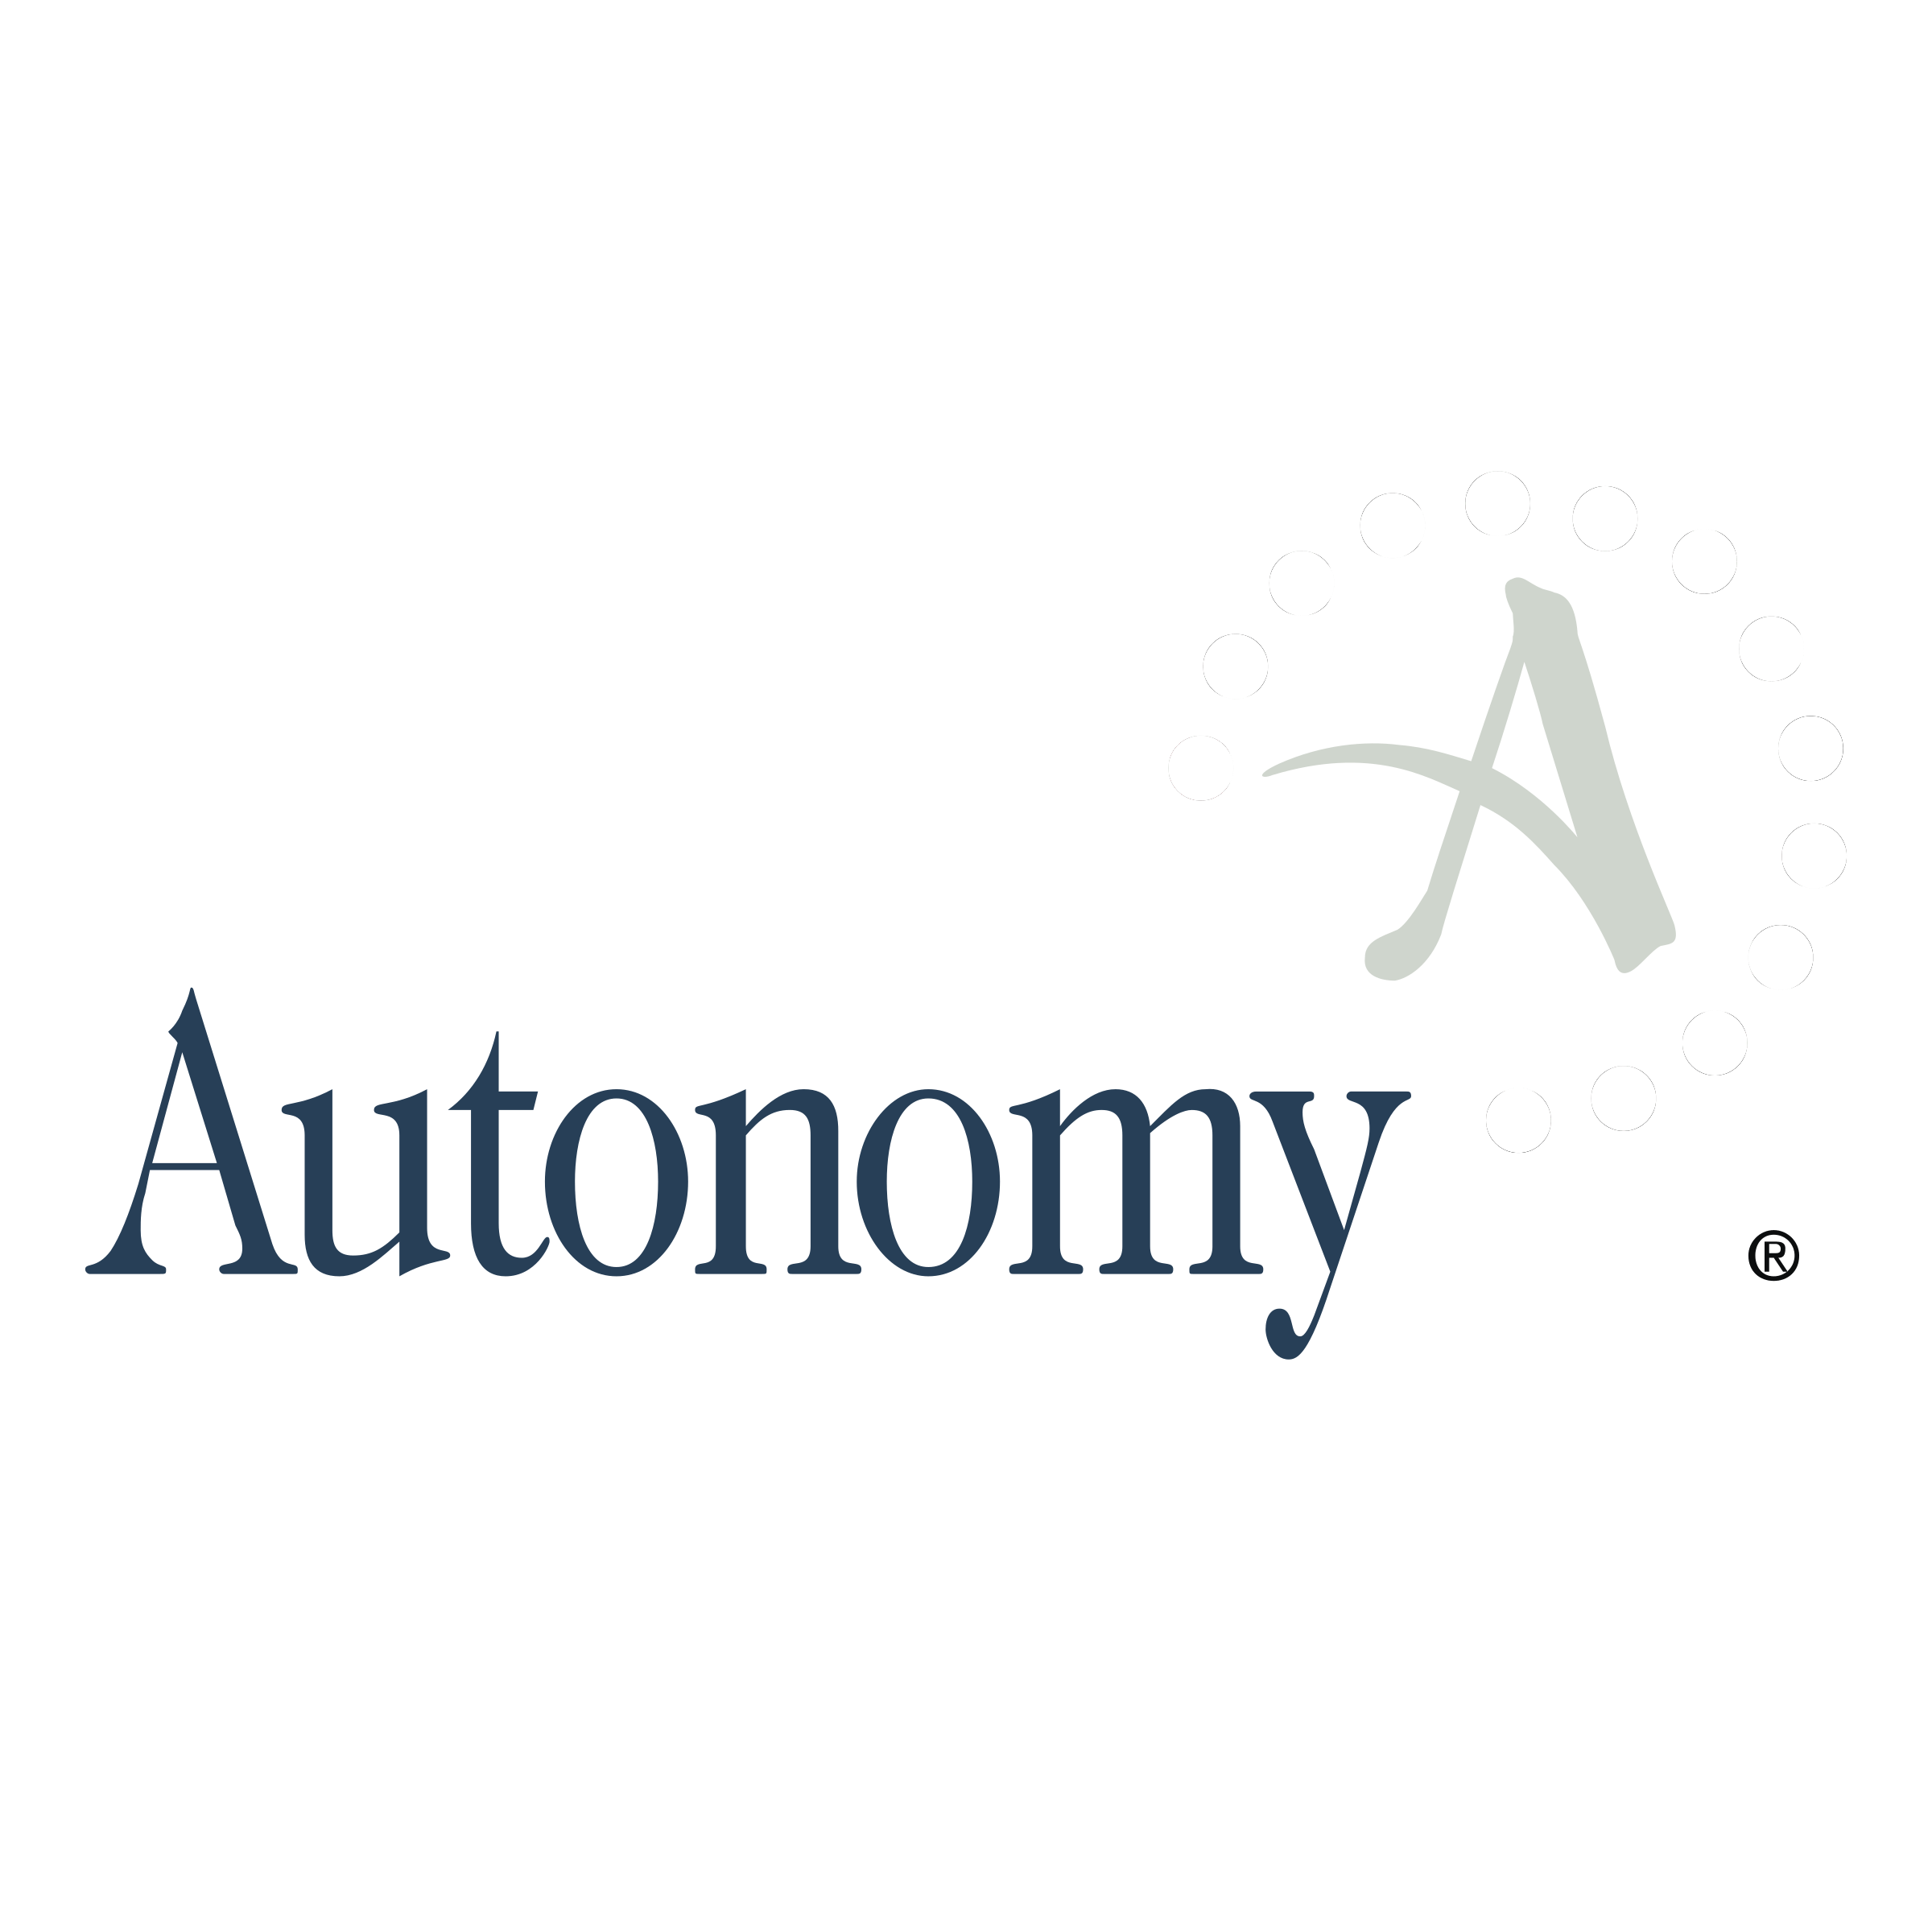 Autonomy Logo - Autonomy 01 Logo PNG Transparent & SVG Vector - Freebie Supply